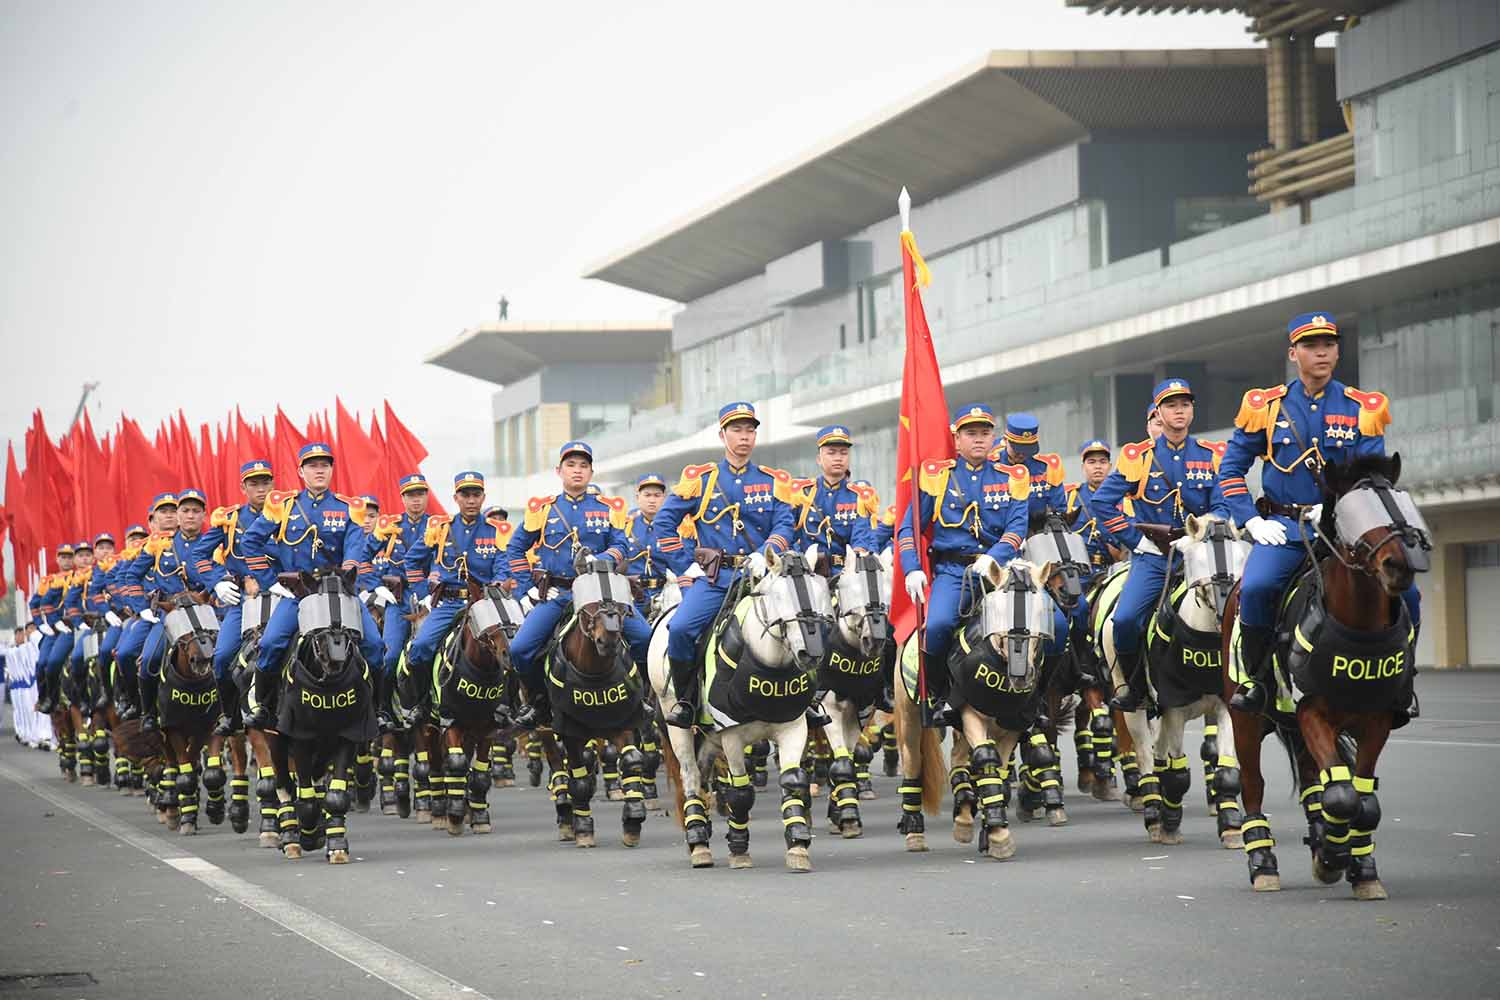 Đoàn Cảnh sát cơ động kỵ binh thuộc Bộ Tư lệnh Cảnh sát cơ động là đơn vị vũ trang chiến đấu tập trung được thành lập năm 2020.